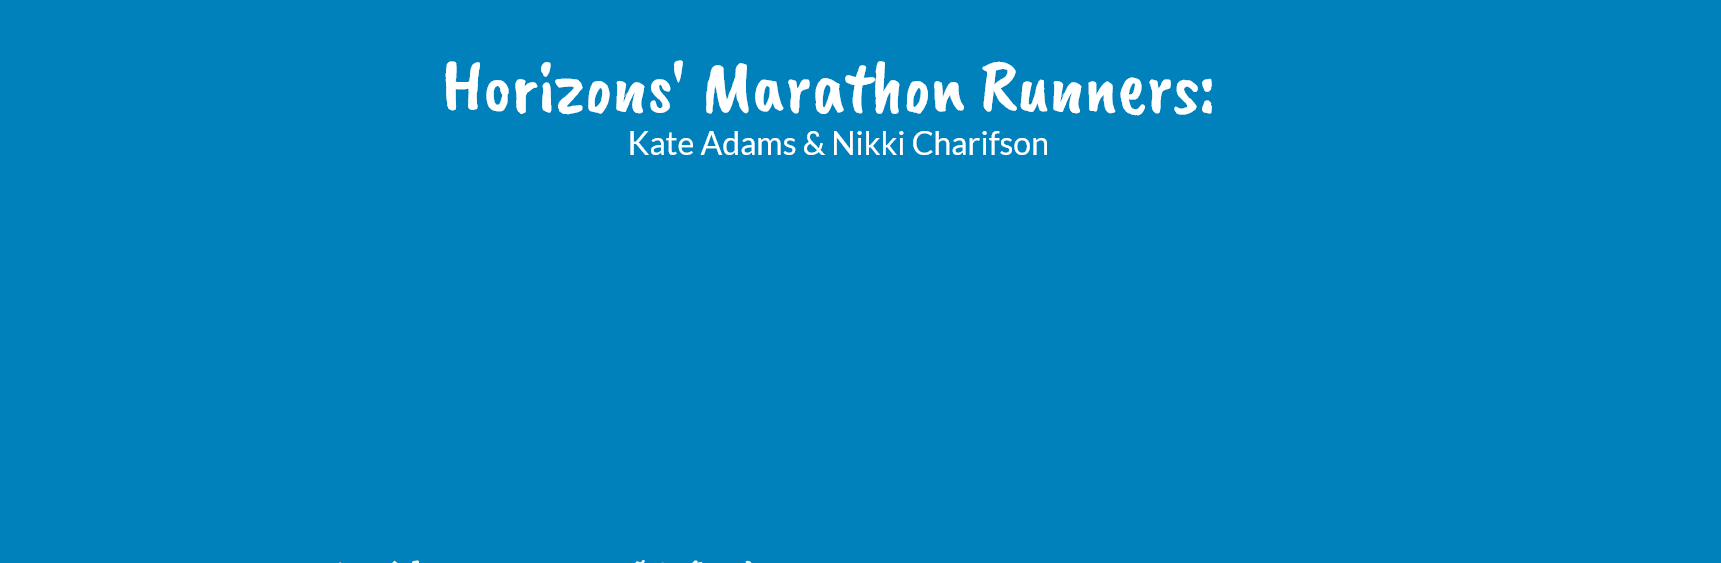 Horizons' Marathon Runners: Kate Adams & Nikki Charifson